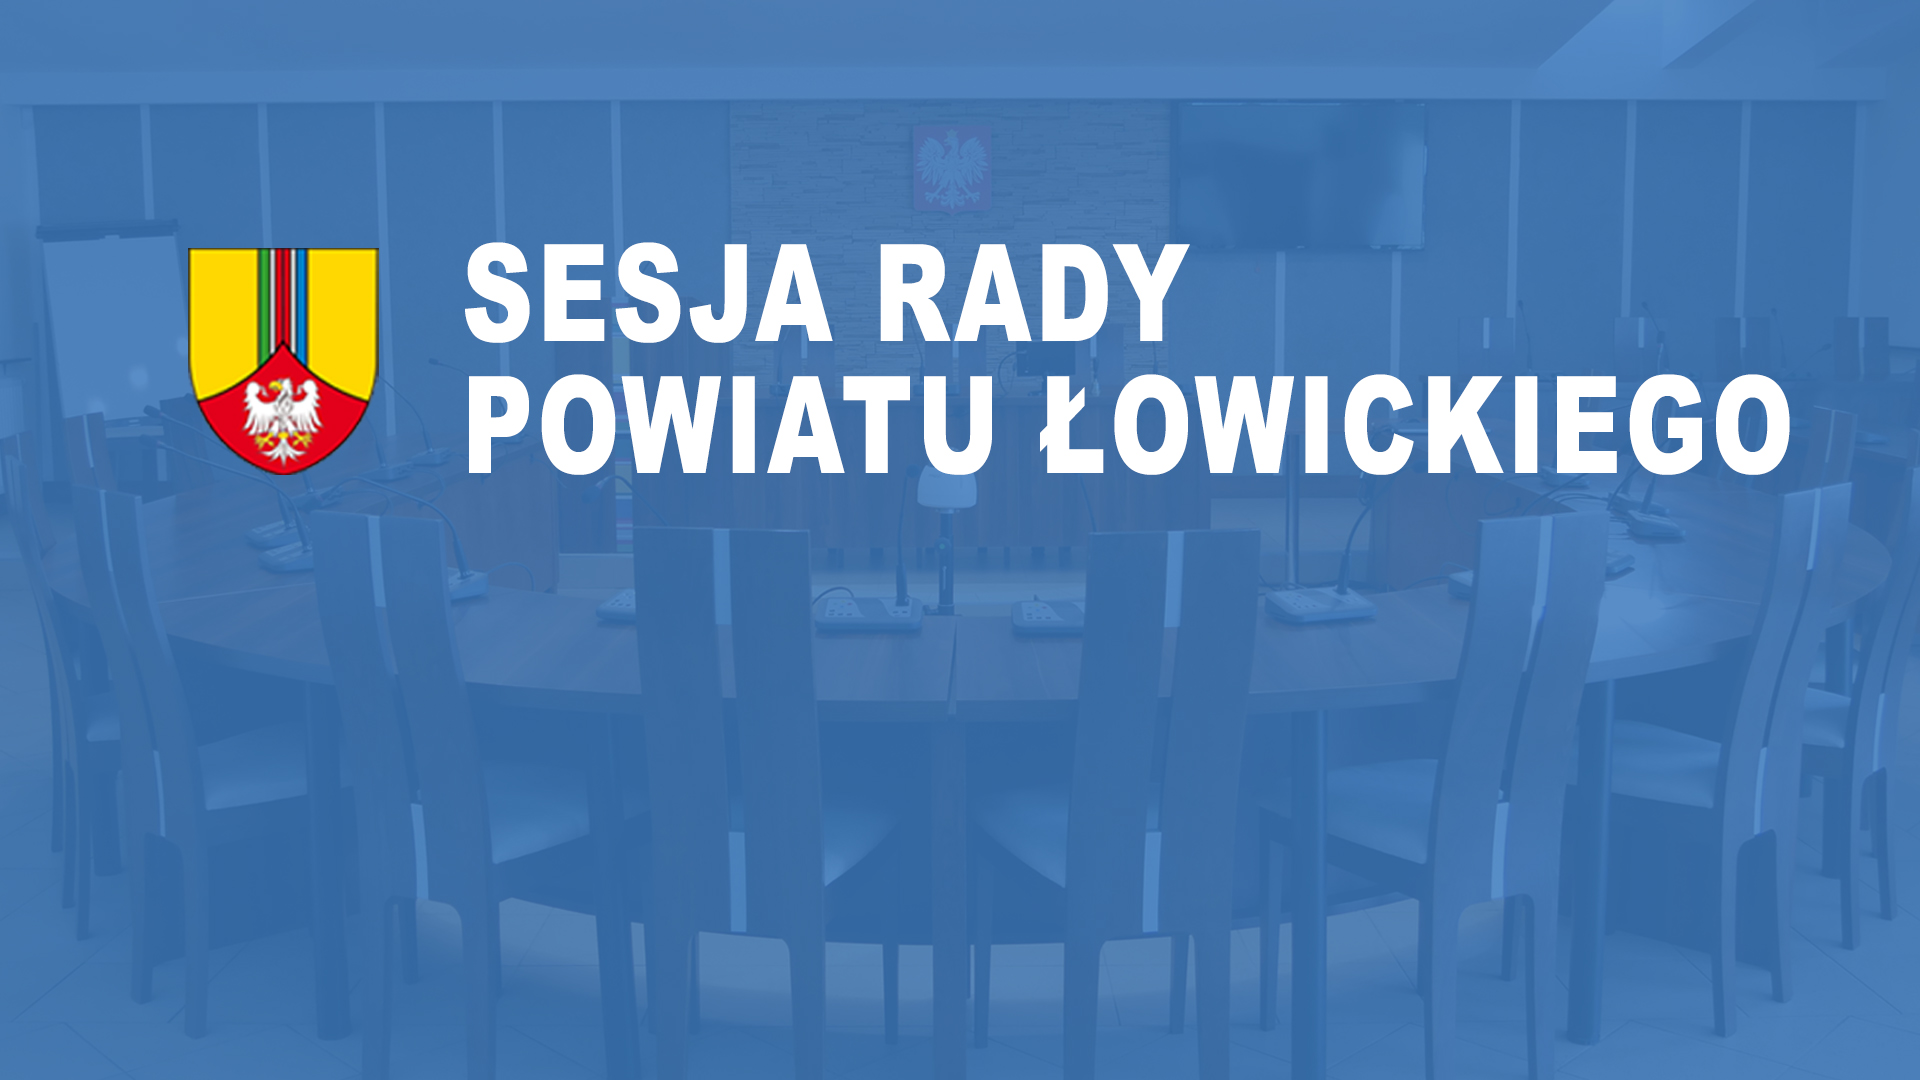 LVIII Sesja Rady Powiatu Łowickiego